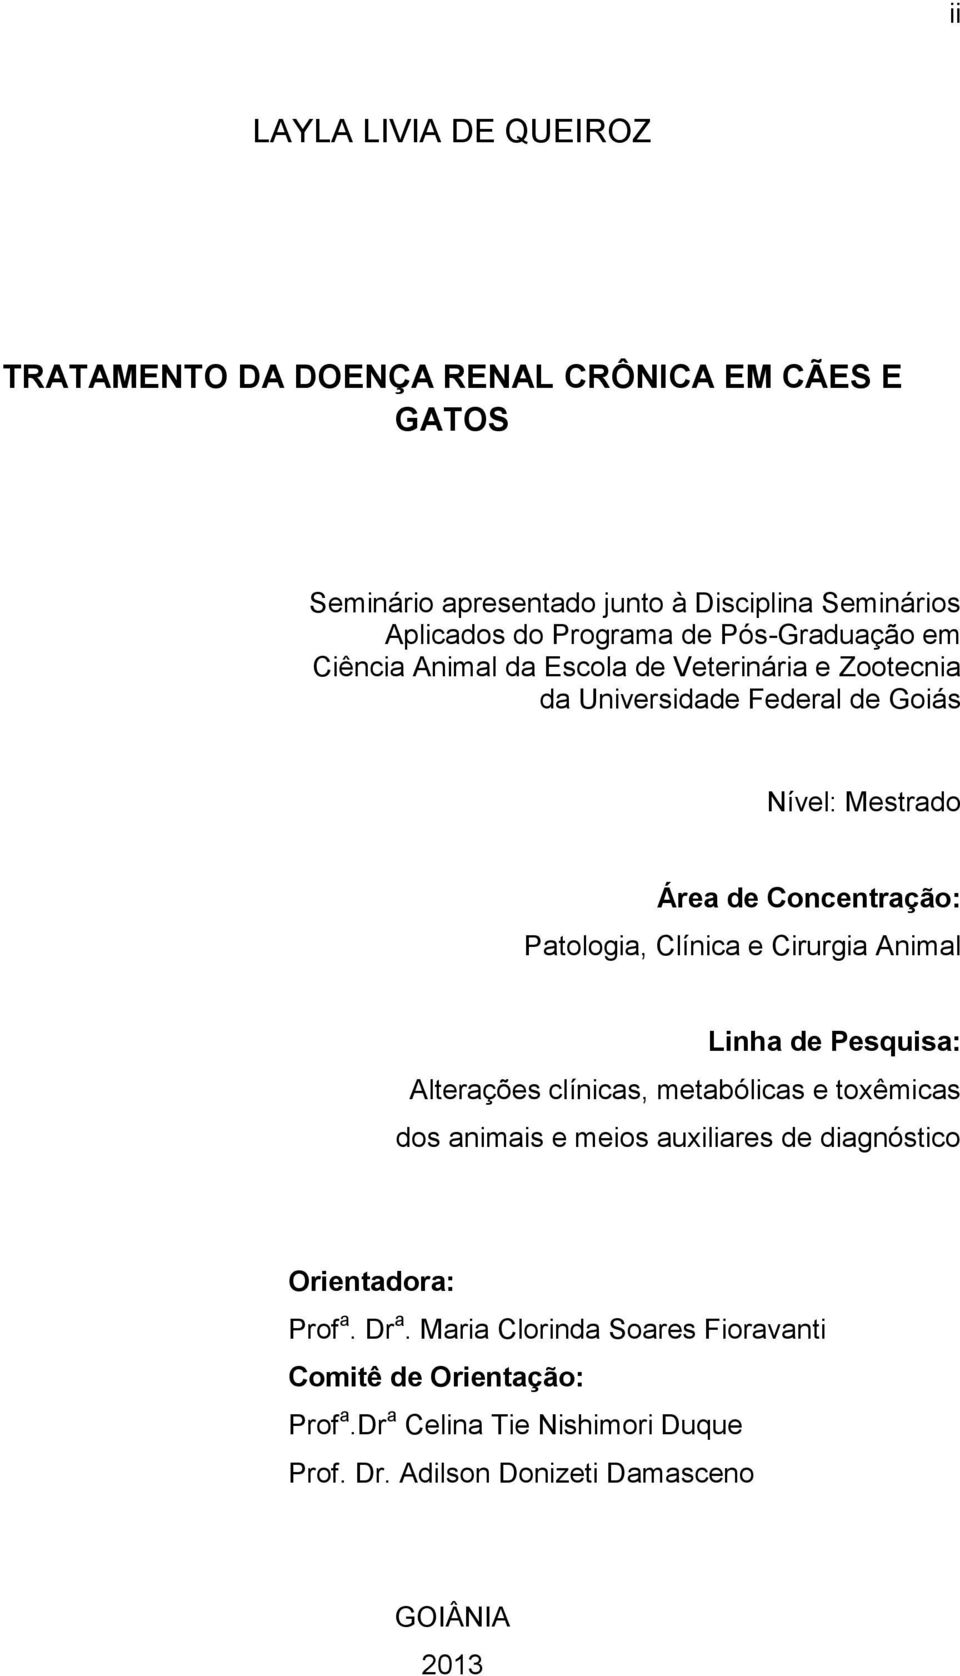 Patologia, Clínica e Cirurgia Animal Linha de Pesquisa: Alterações clínicas, metabólicas e toxêmicas dos animais e meios auxiliares de diagnóstico